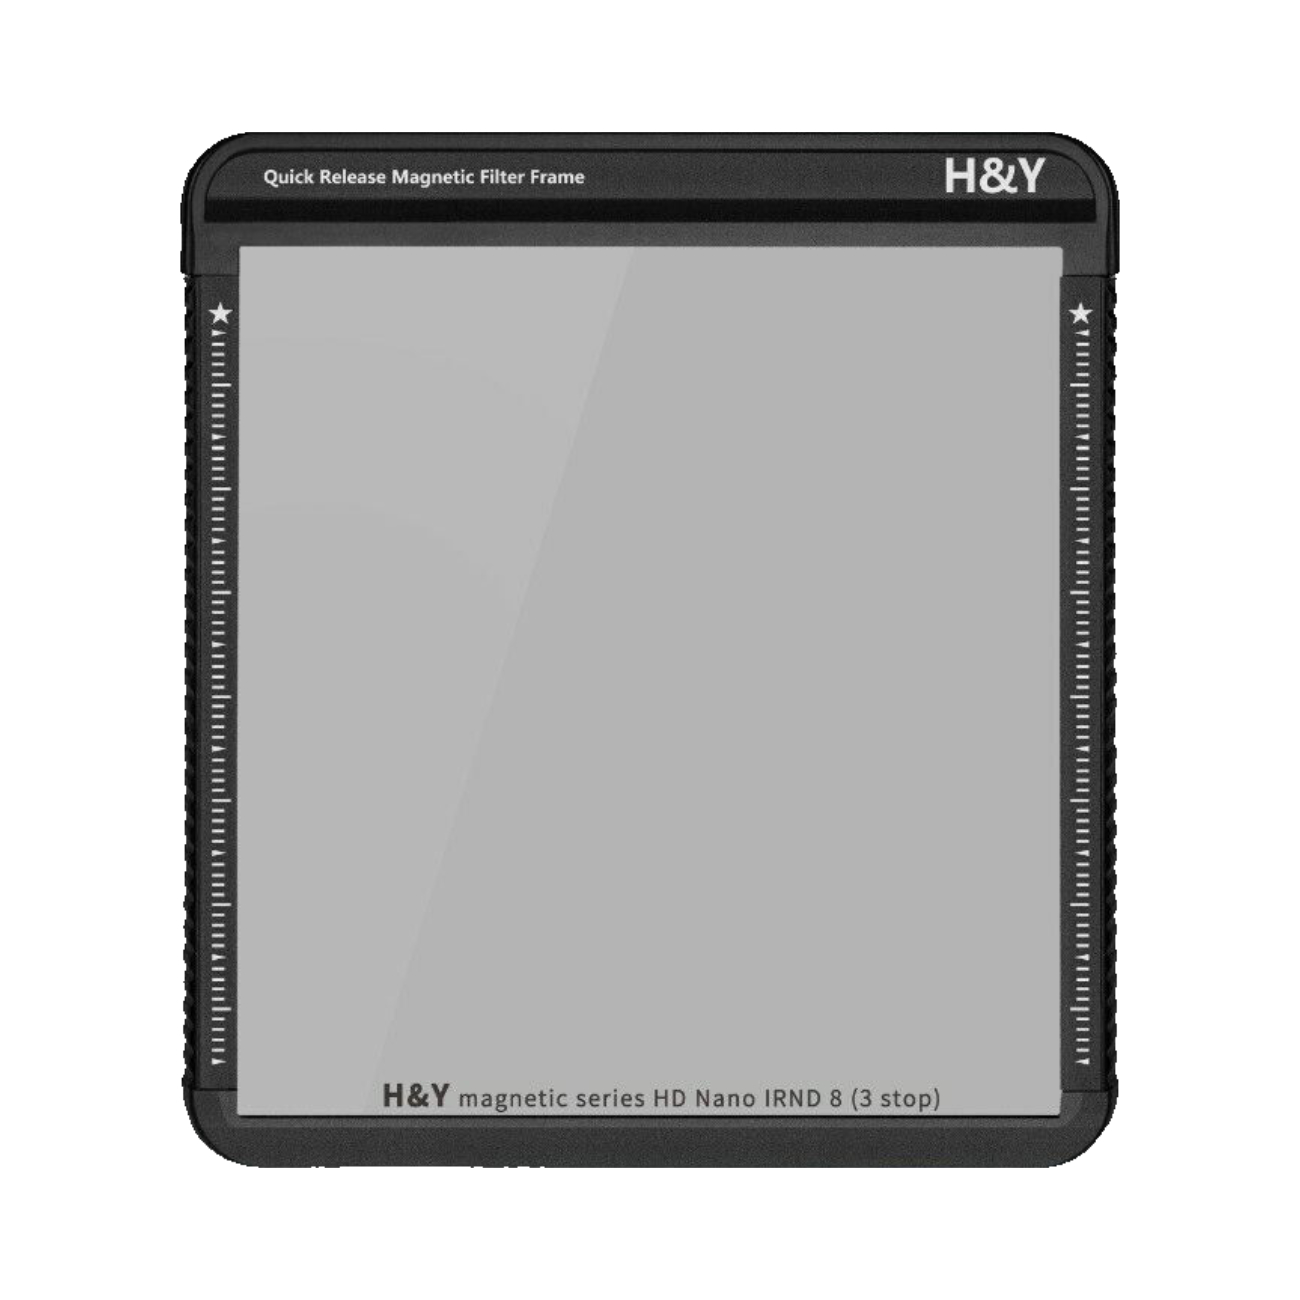 H&Y Filter Starter Kit mit Pol Filter